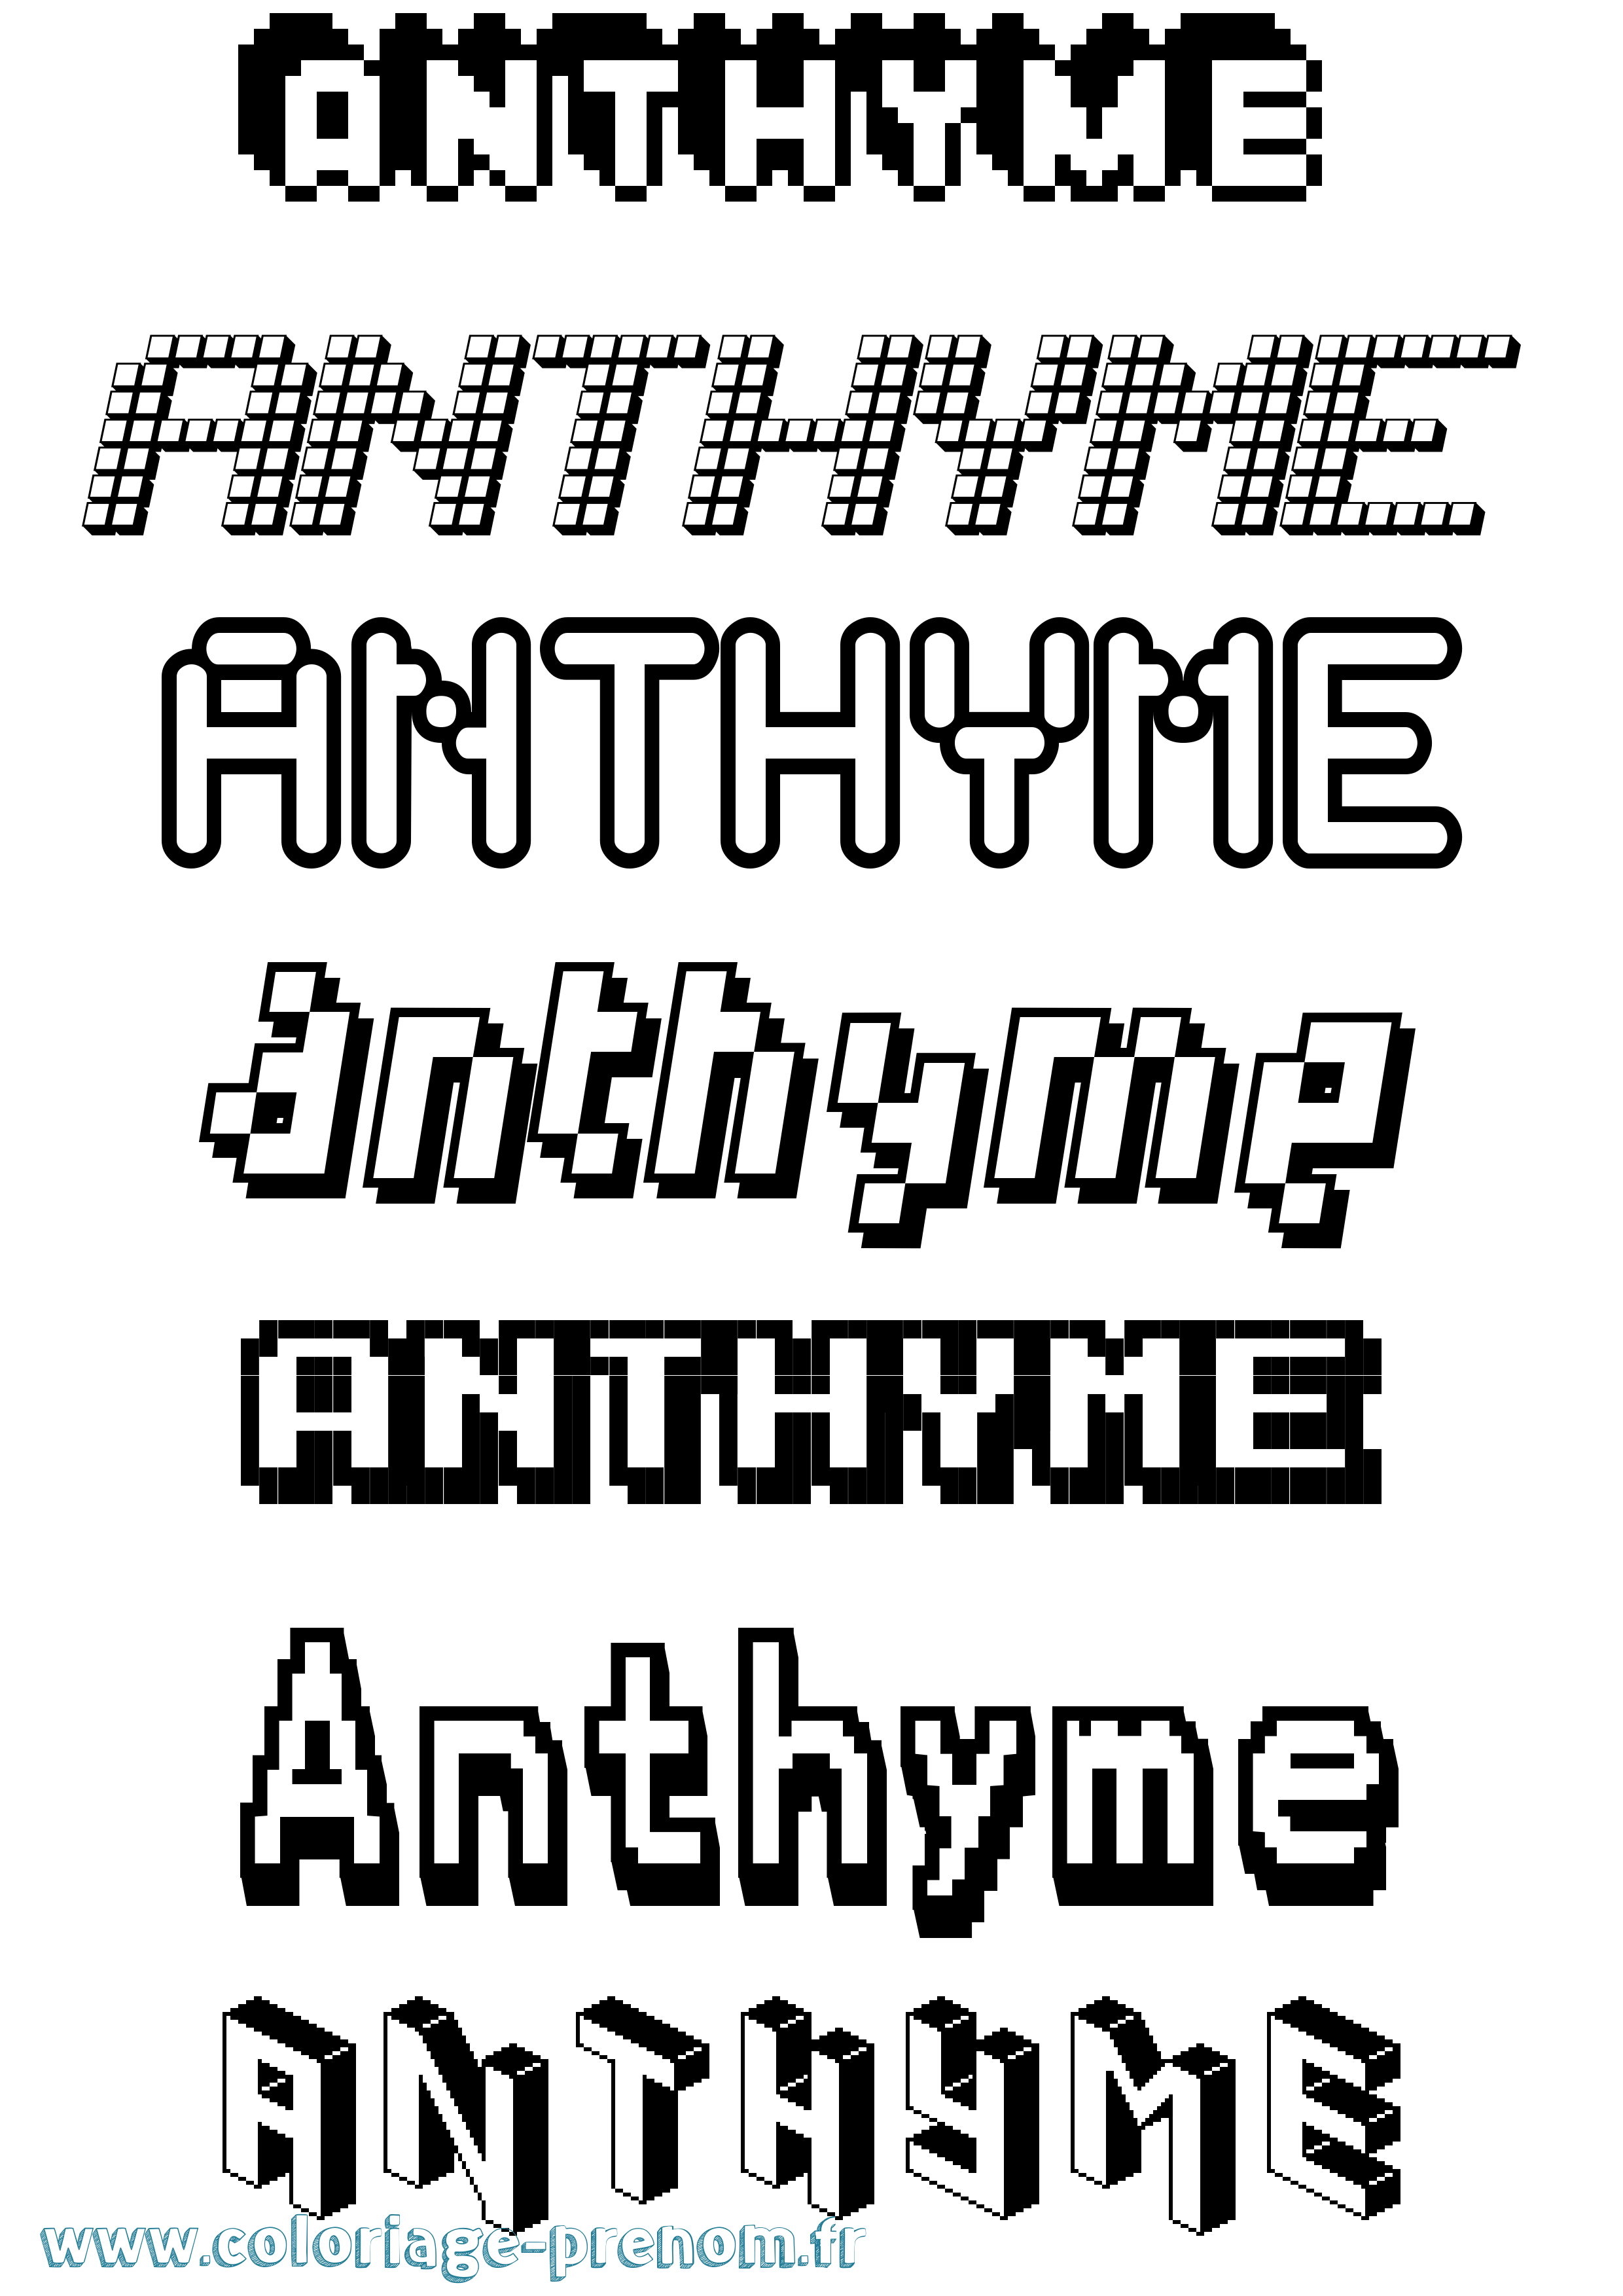 Coloriage prénom Anthyme Pixel